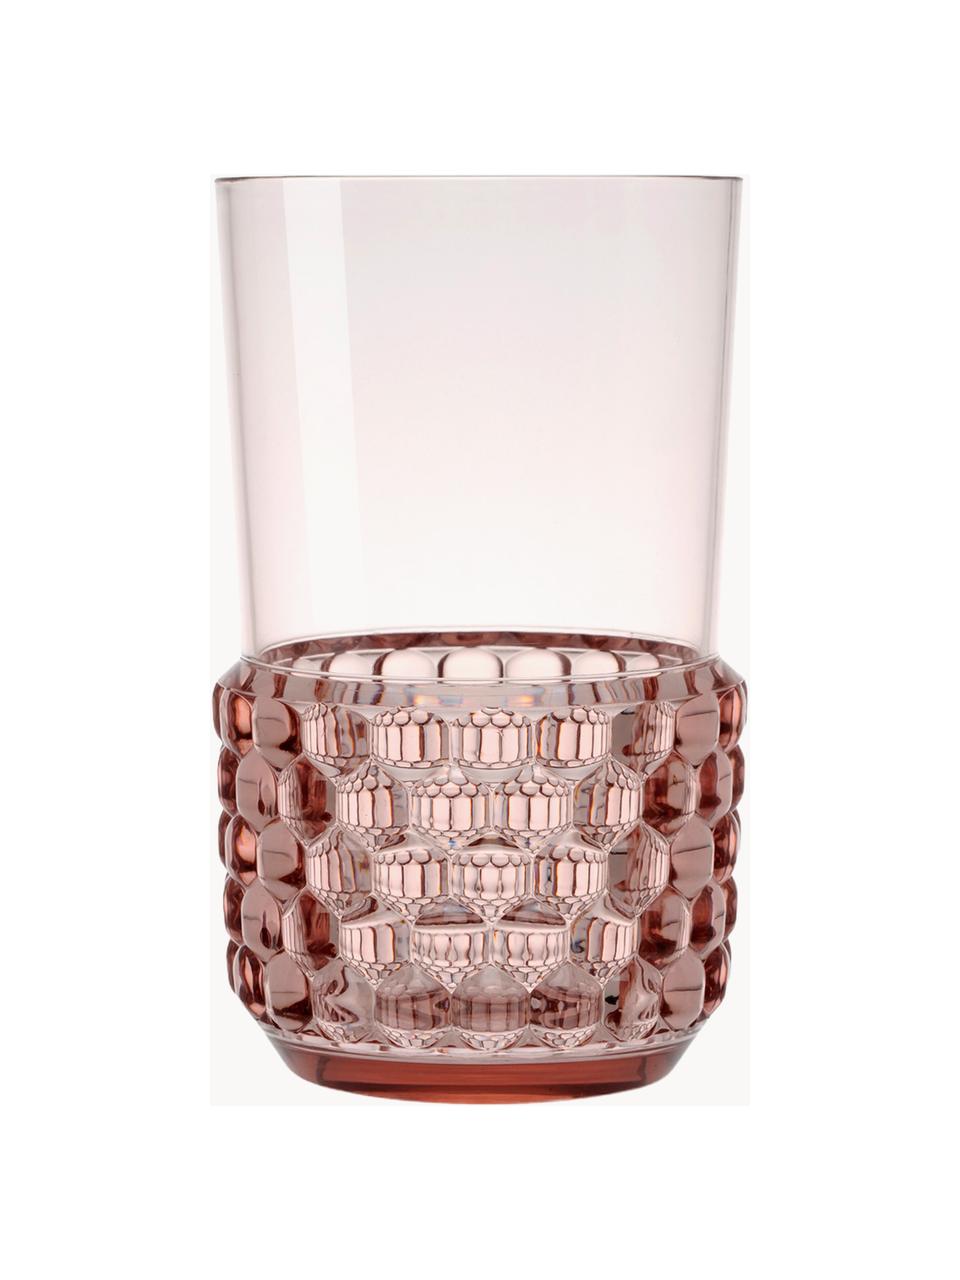 Bicchieri con motivo strutturato Jellies 4 pz, Plastica, Rosa chiaro, Ø 9 x Alt. 15 cm, 600 ml